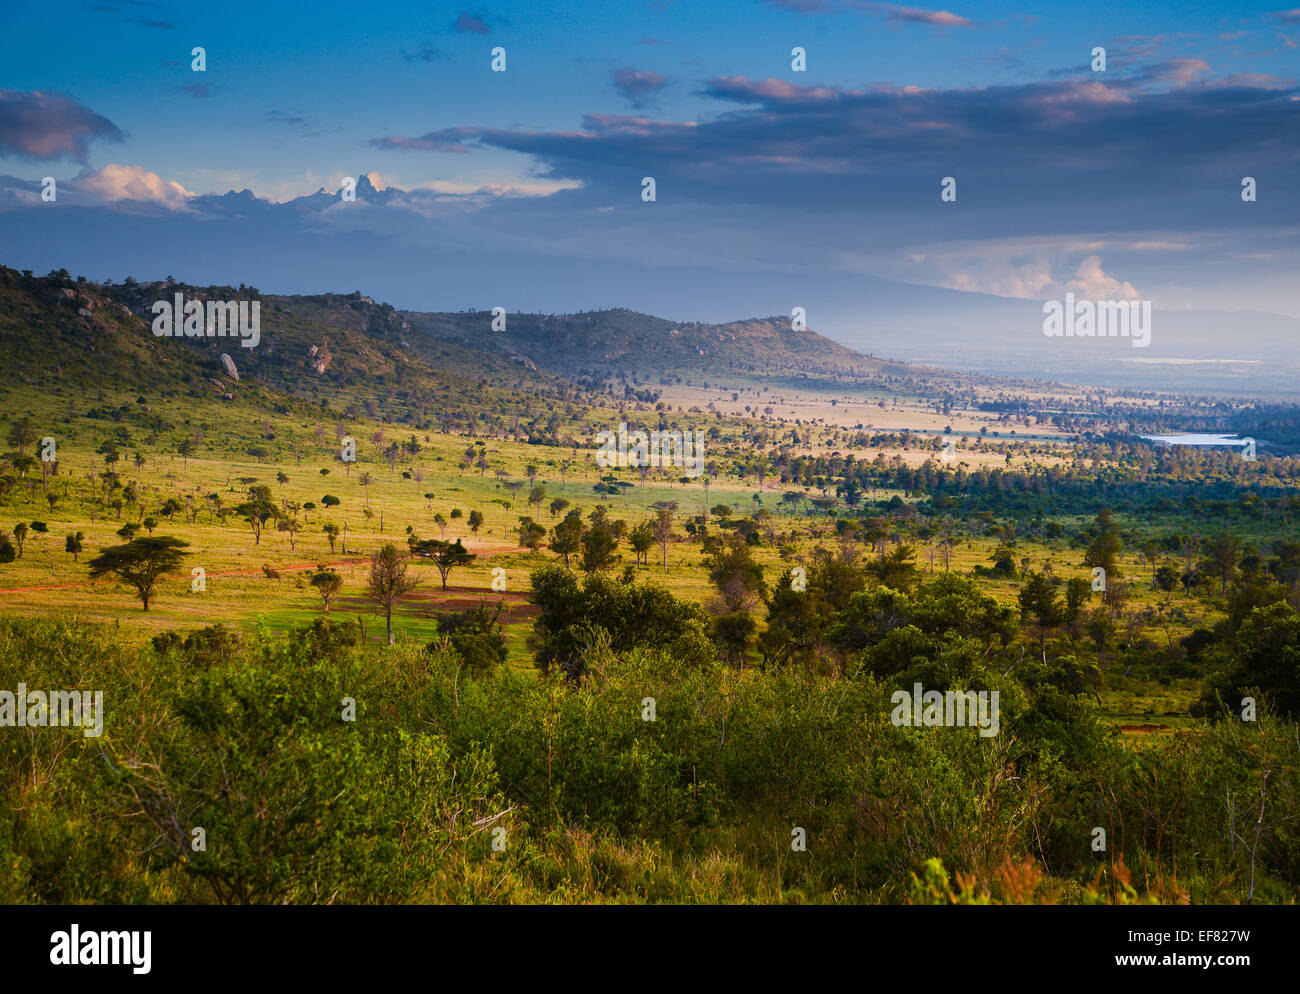 Il quartiere Lakipia nella regione centrale del Kenya, sull'equatore guardando a sud verso il monte Kenya Foto Stock